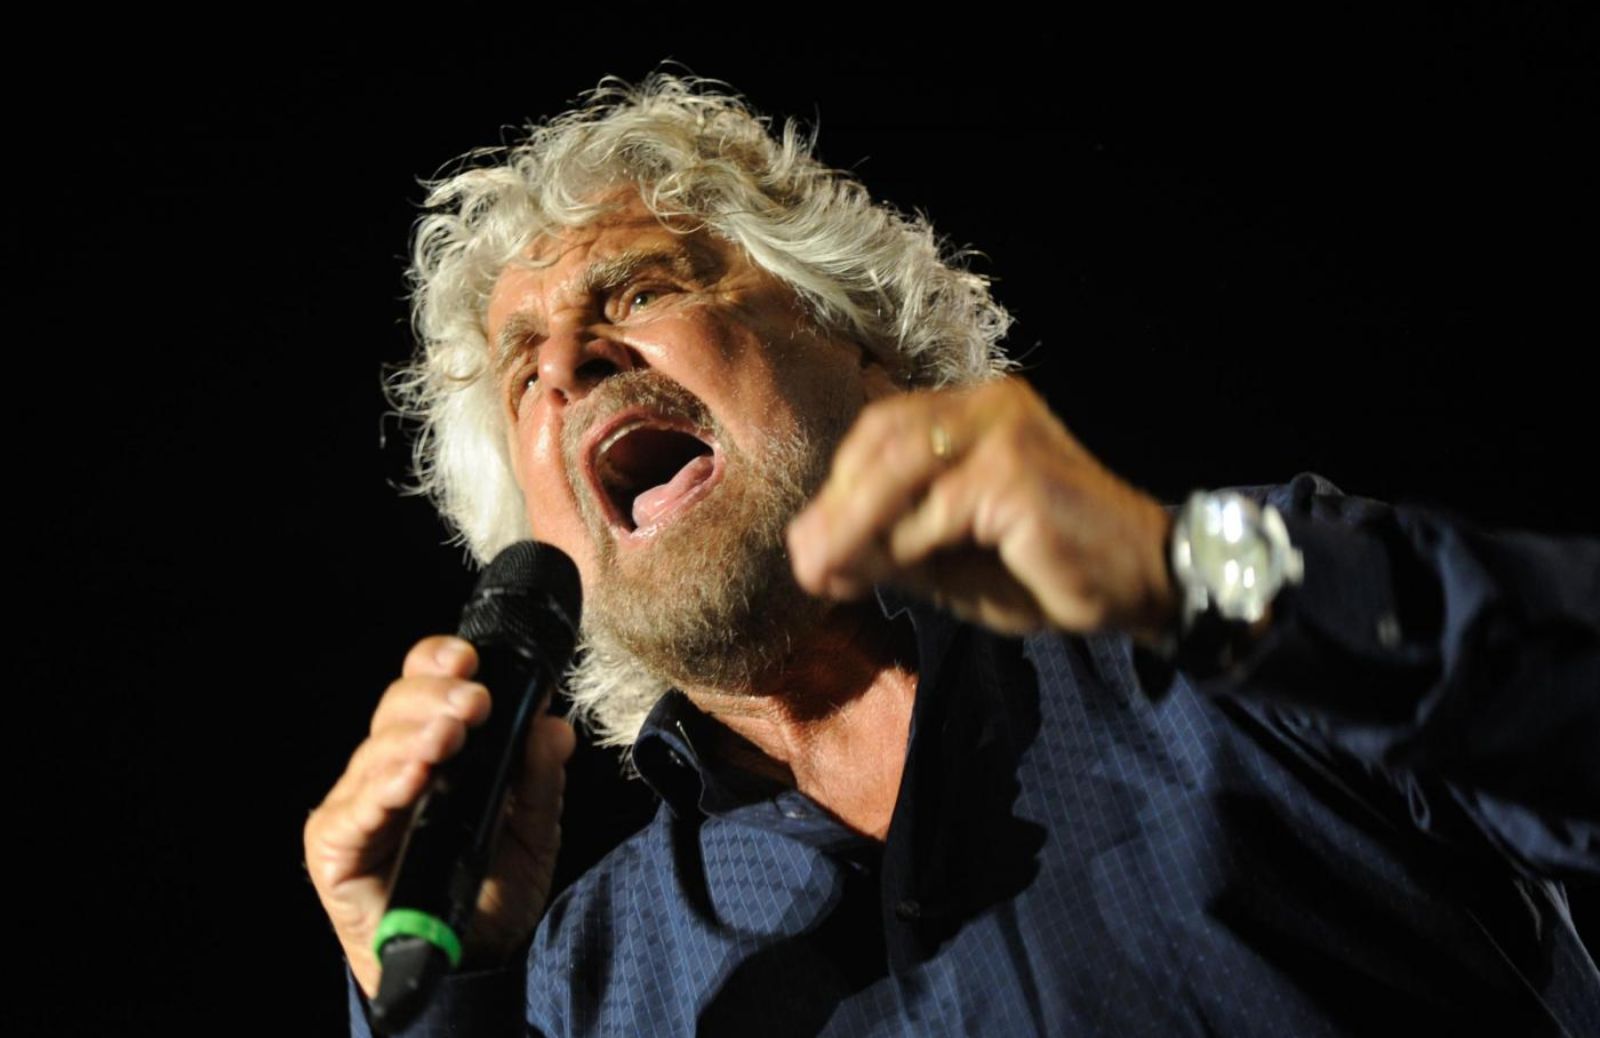 Le vittime di violenza non denunciano per colpa di quelli come Beppe Grillo